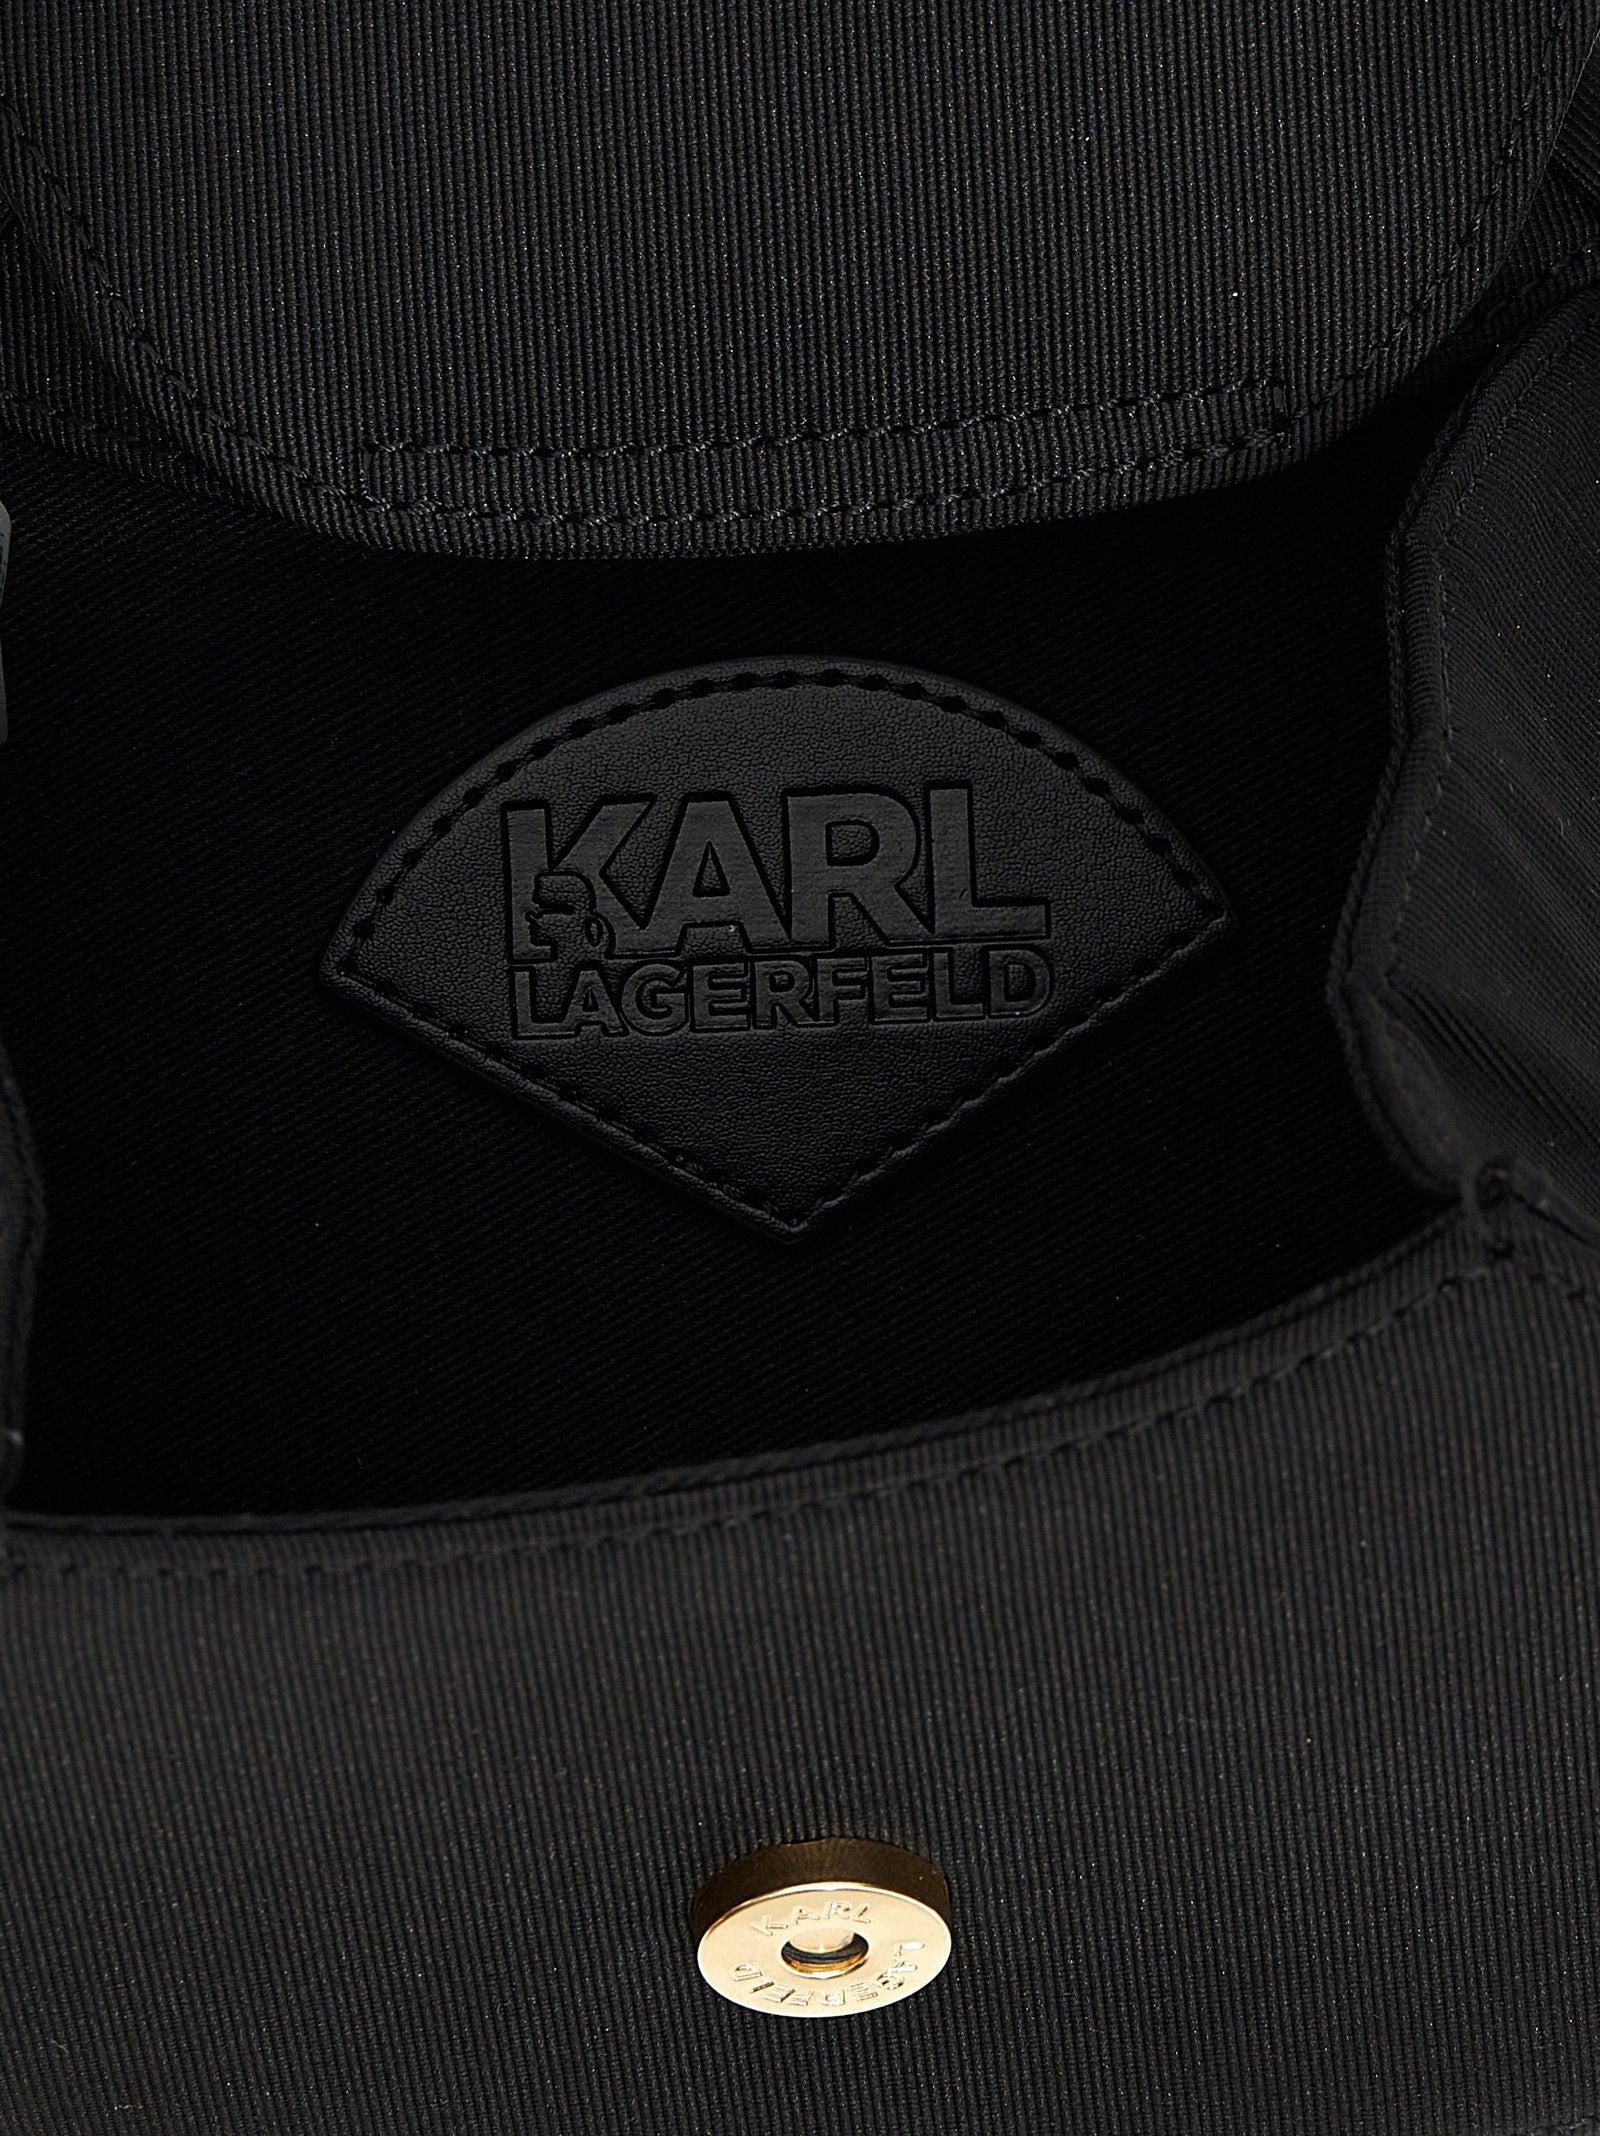 Karl Lagerfeld K/archive Fan Mini Clutch Bag